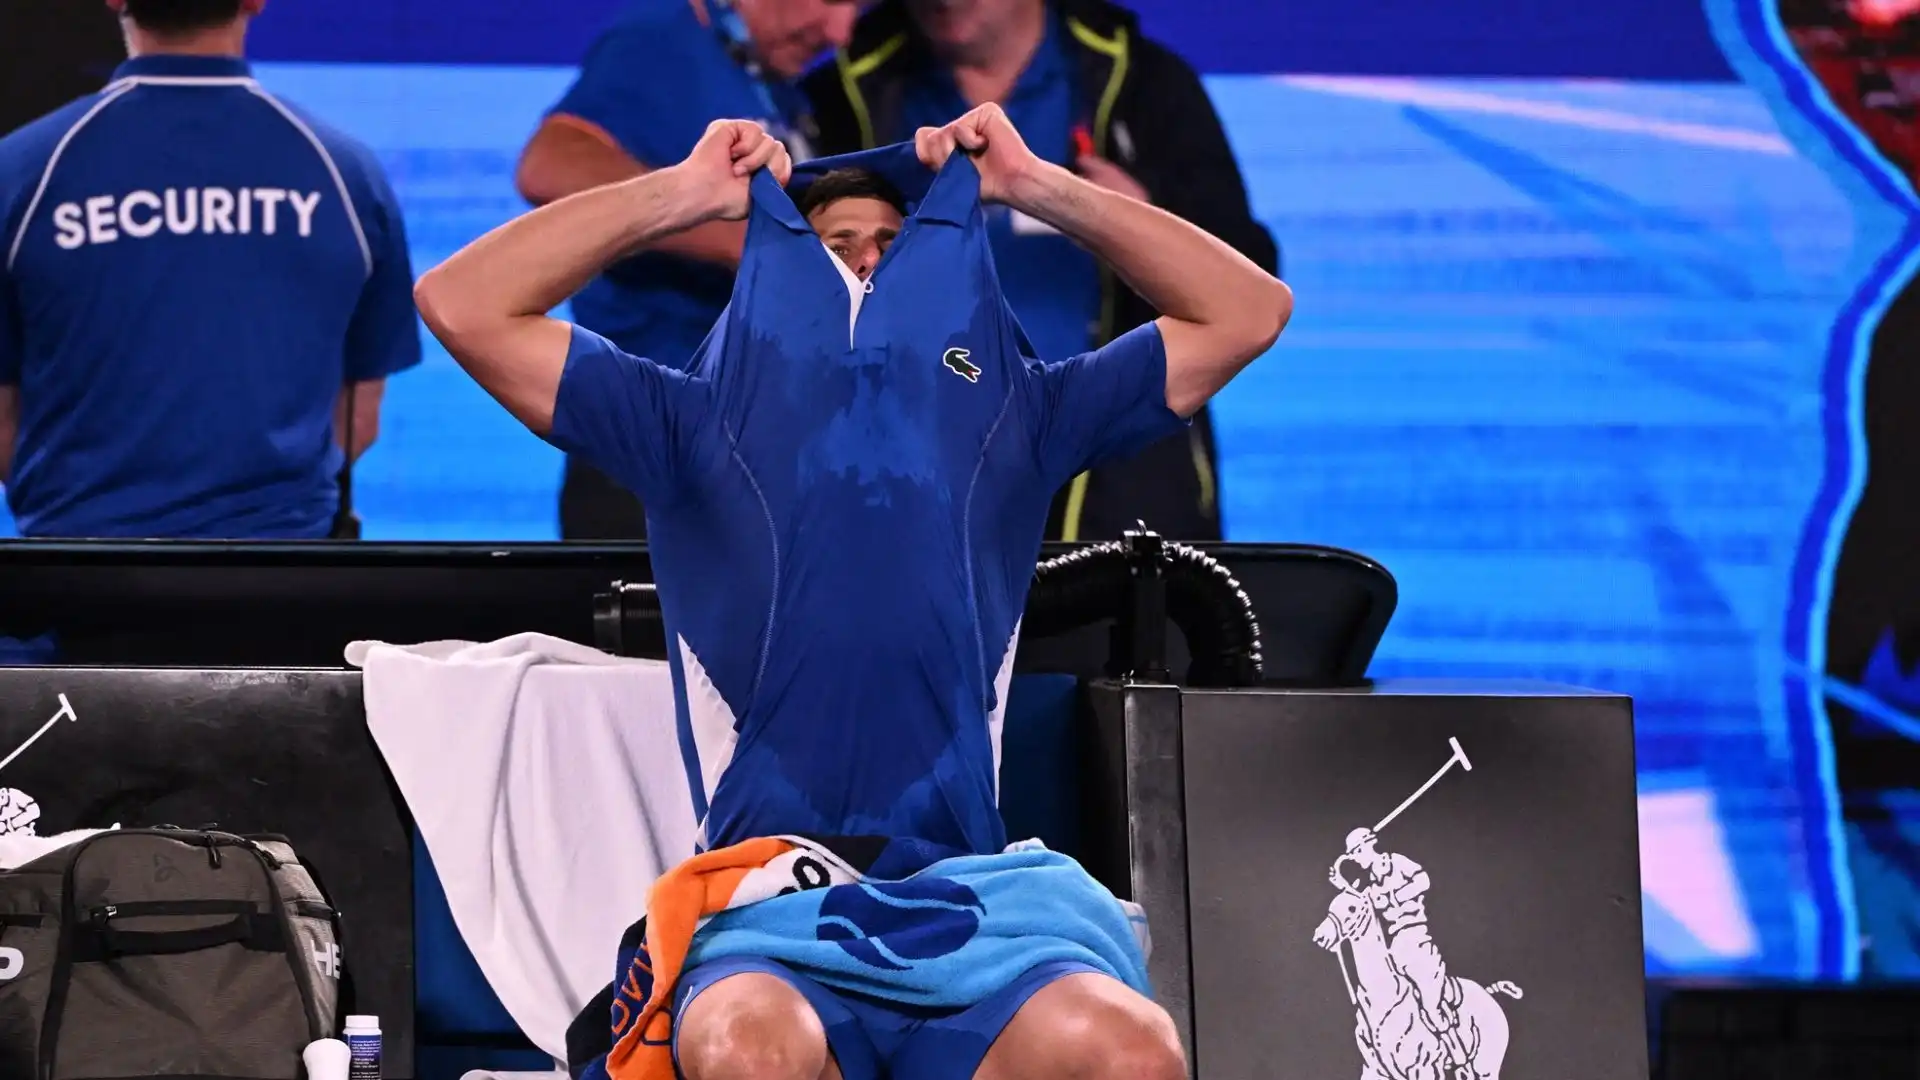 Da monitorare le condizioni fisiche di Djokovic, che ha accusato problemi al polso prima del torneo